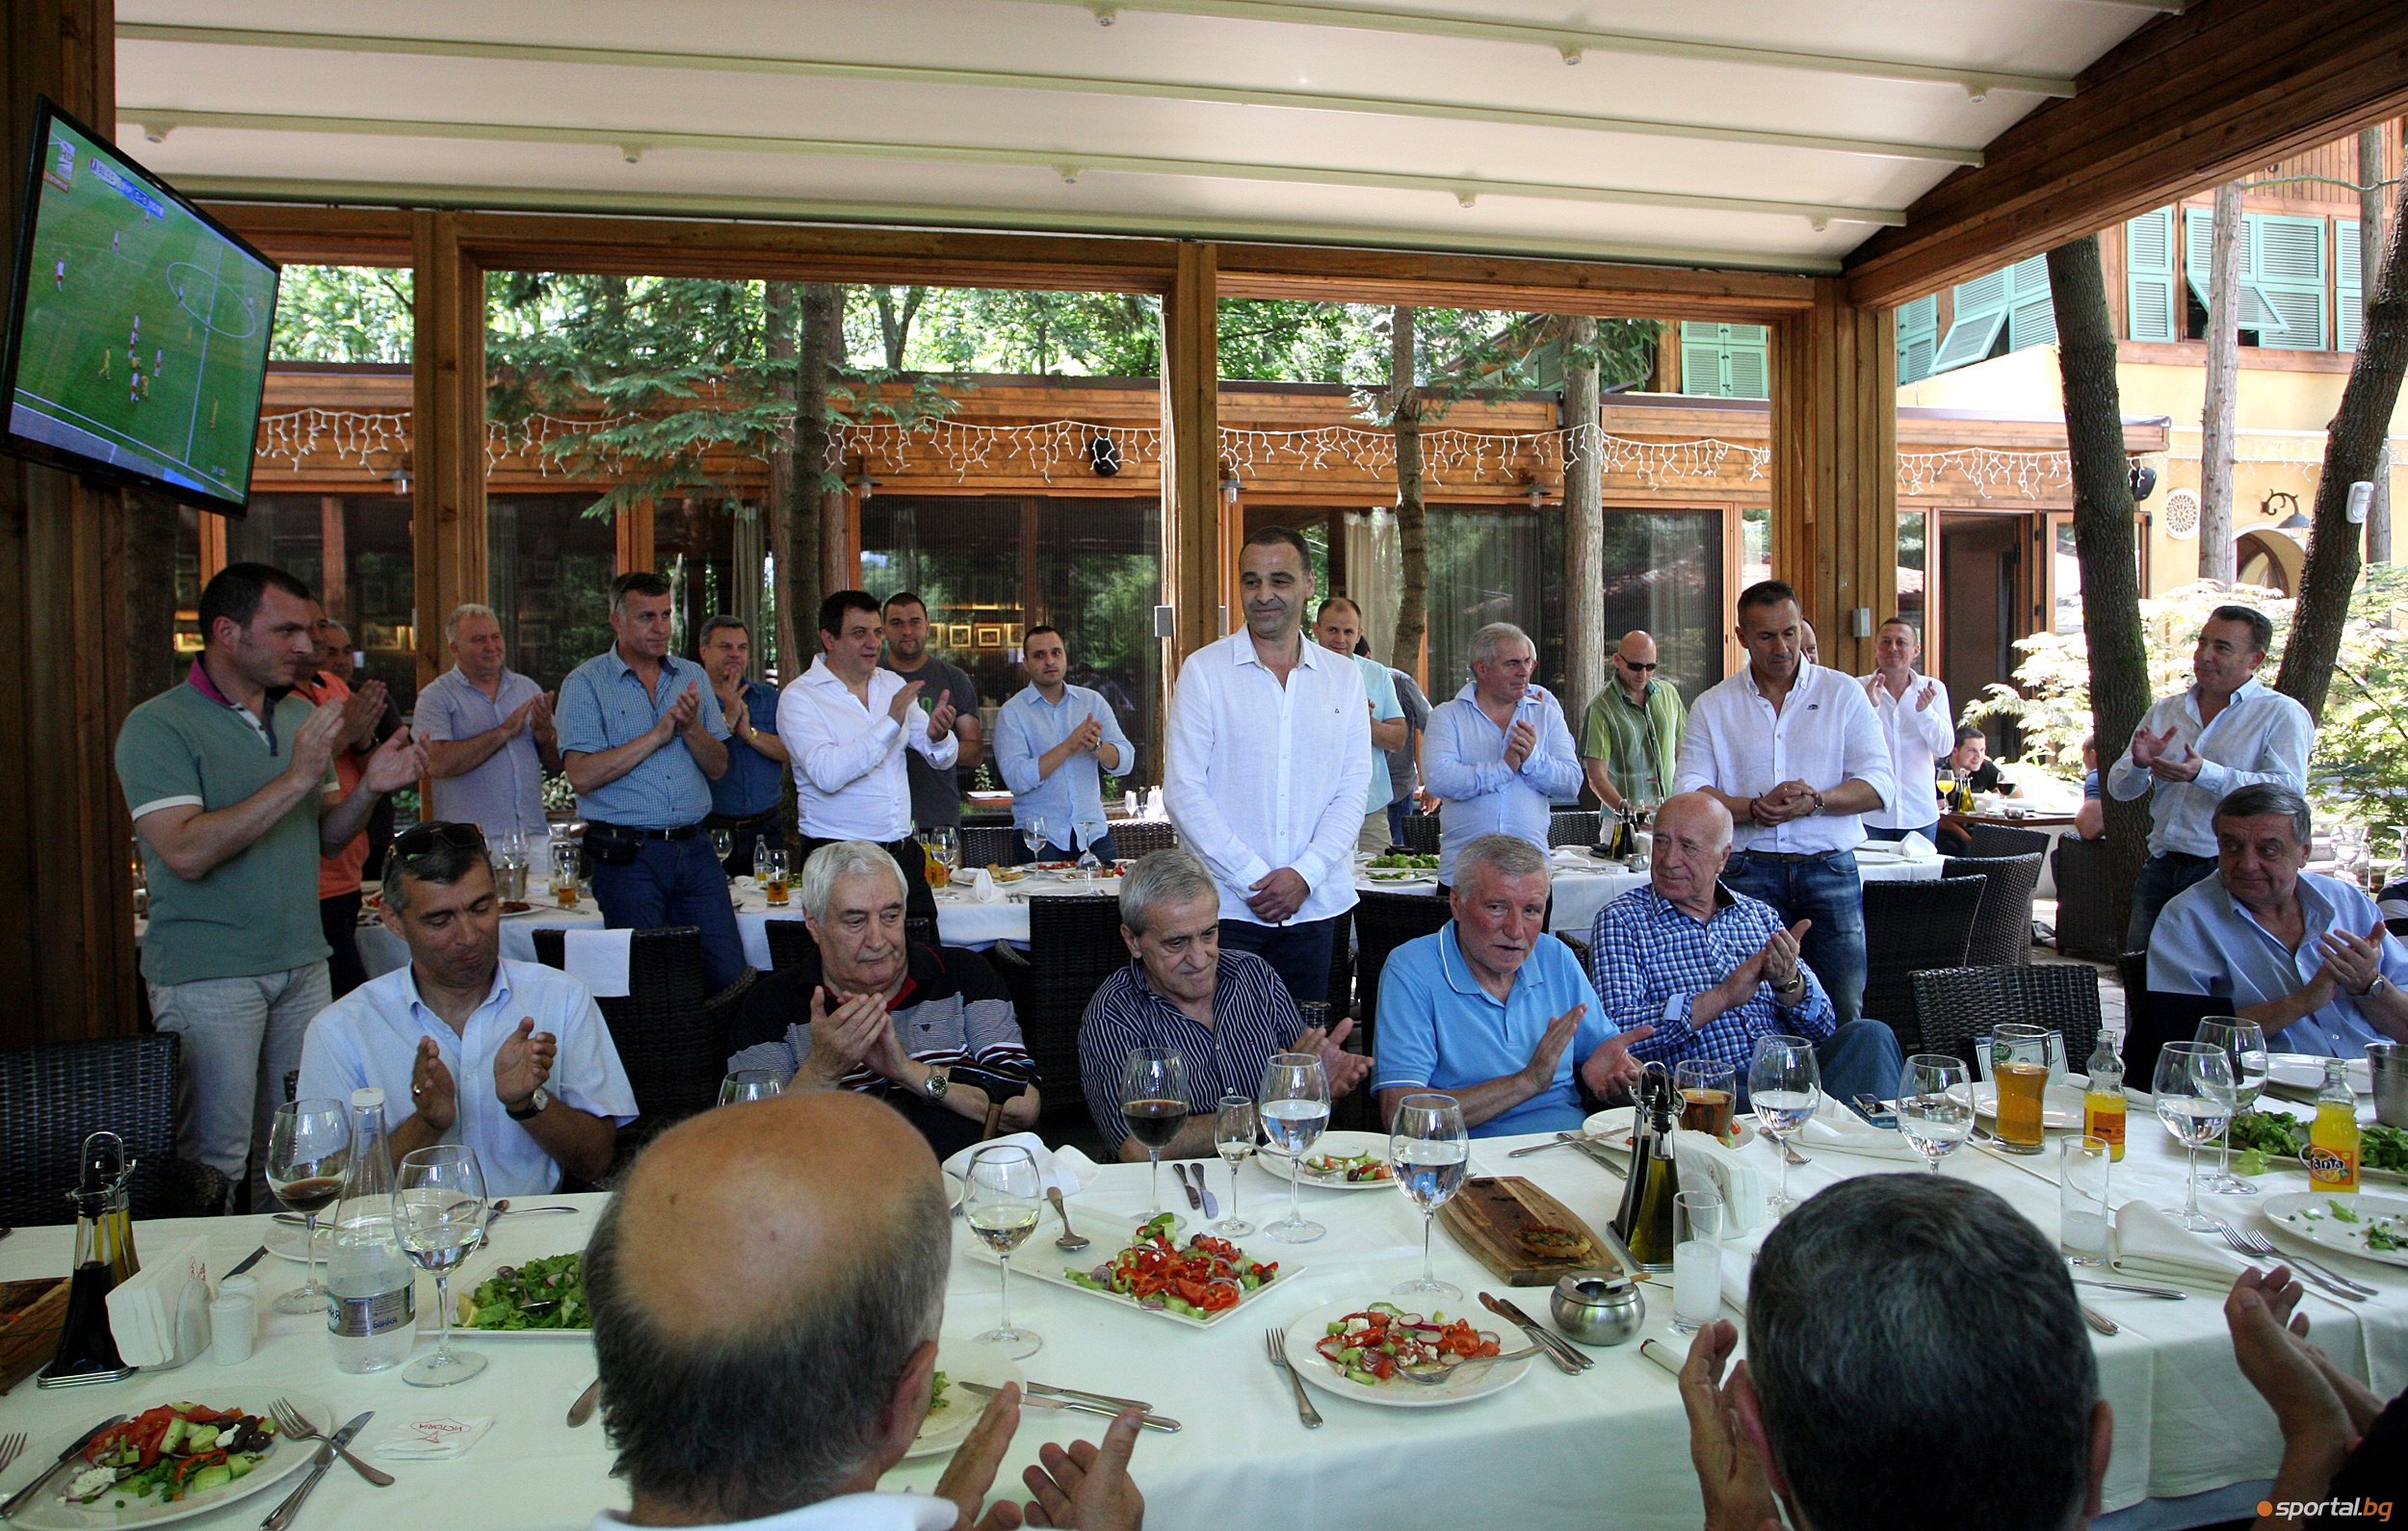 "Сини сърца" се събраха за честване на 40 години от победата над Барса